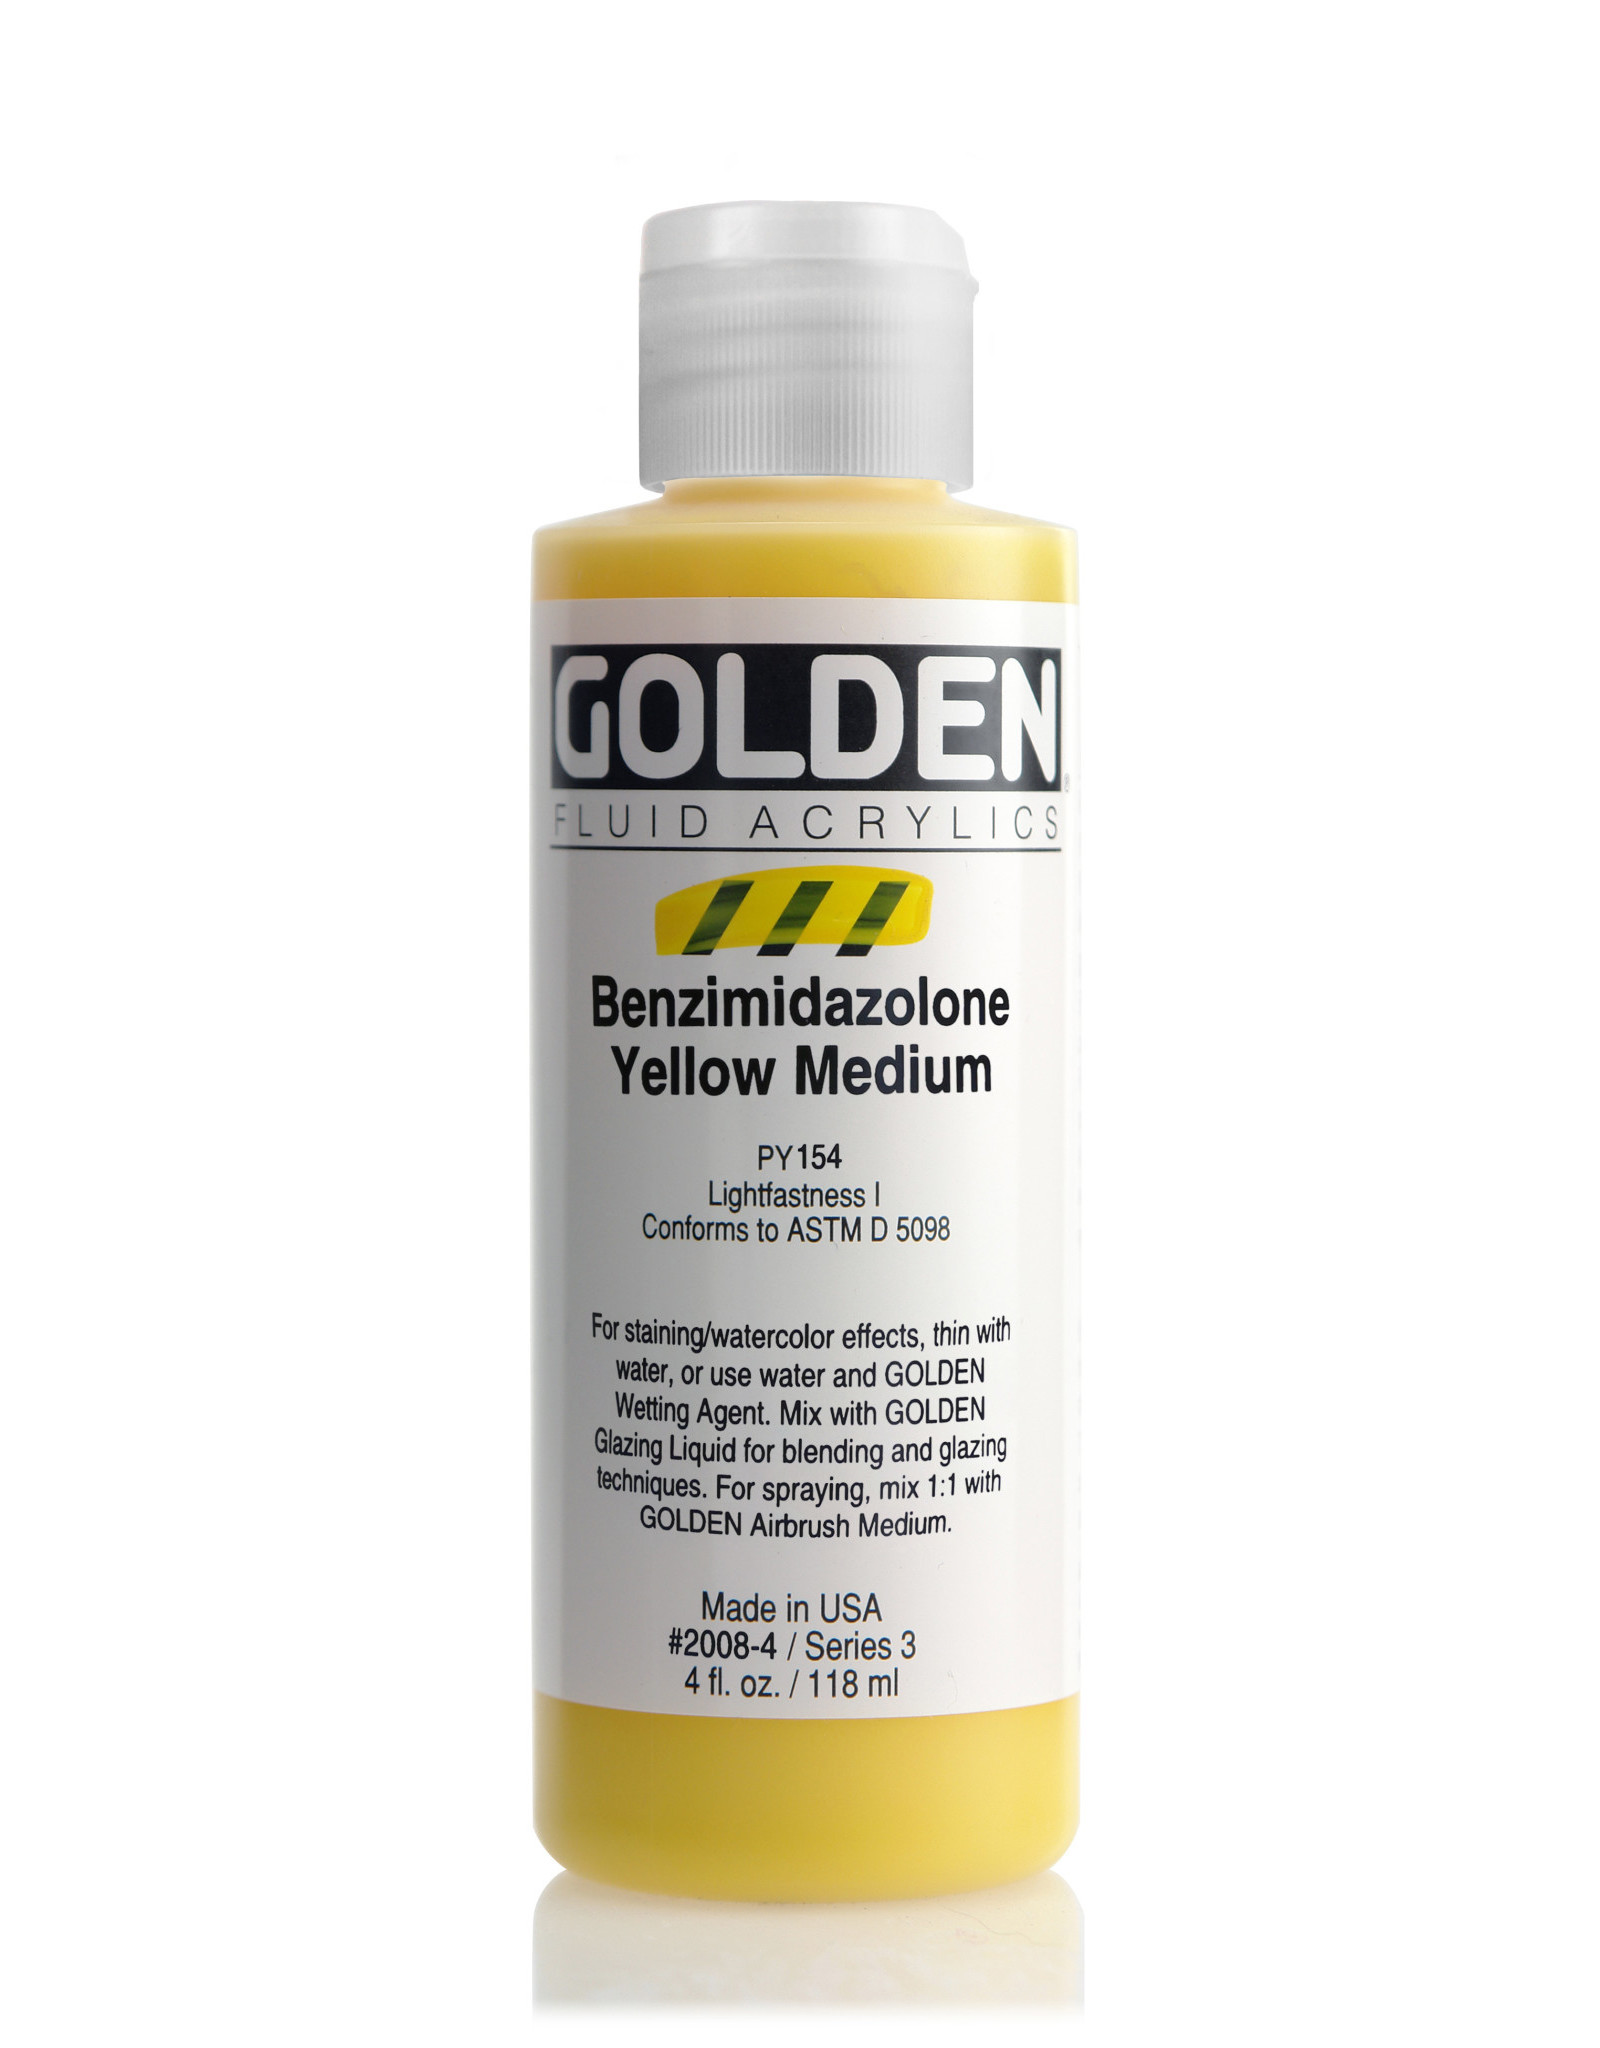 Golden Golden Fluid Acrylics, Benzimidazolone Yellow Medium 4oz Cylinder